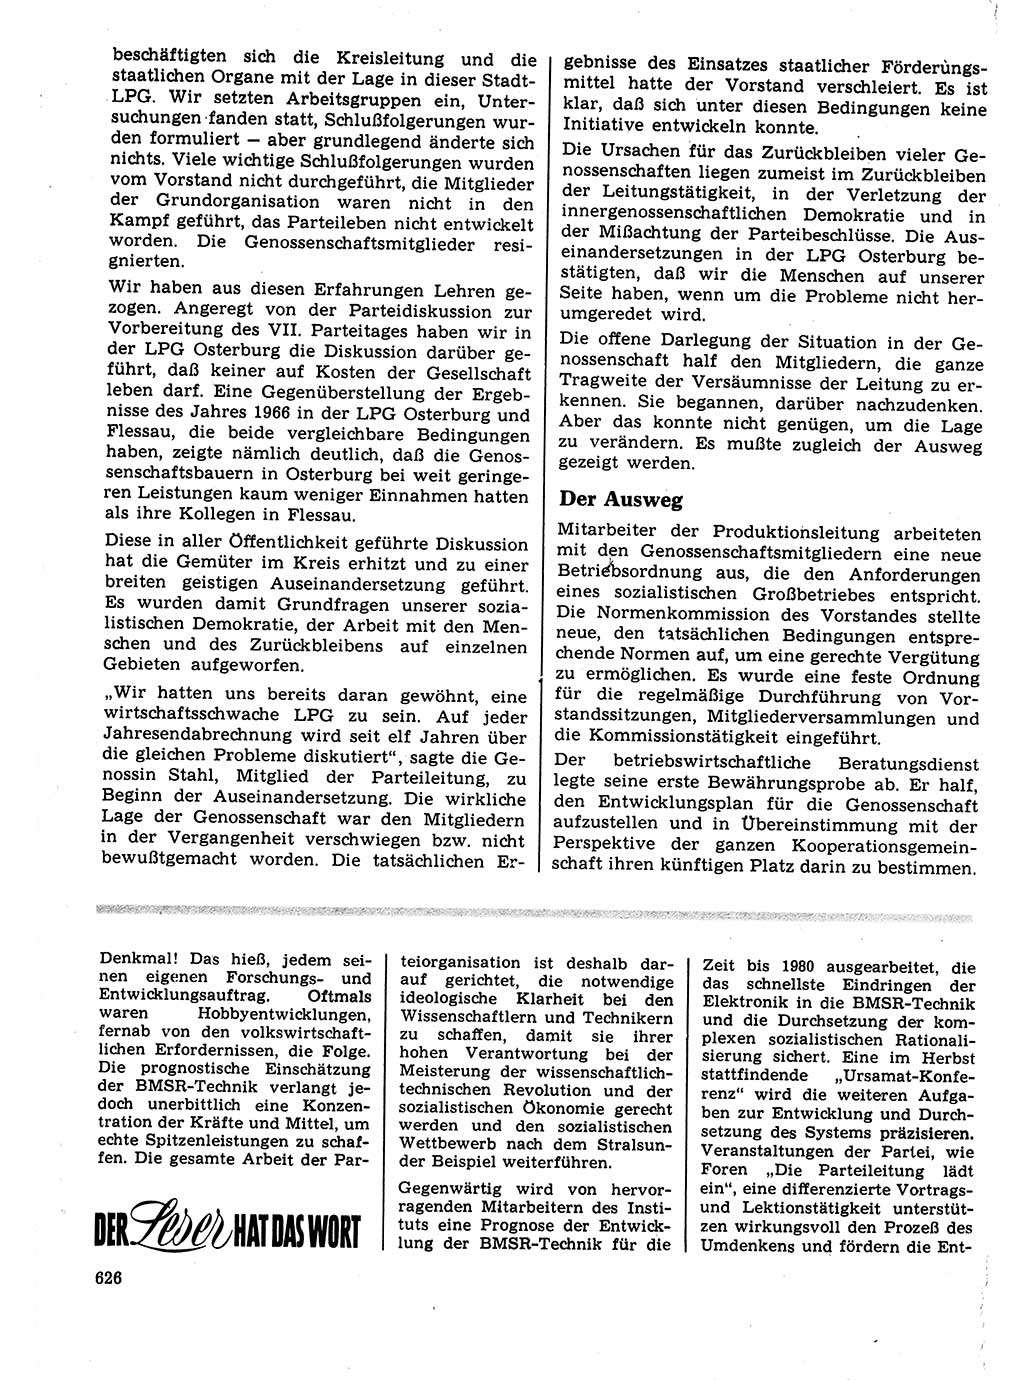 Neuer Weg (NW), Organ des Zentralkomitees (ZK) der SED (Sozialistische Einheitspartei Deutschlands) für Fragen des Parteilebens, 22. Jahrgang [Deutsche Demokratische Republik (DDR)] 1967, Seite 626 (NW ZK SED DDR 1967, S. 626)